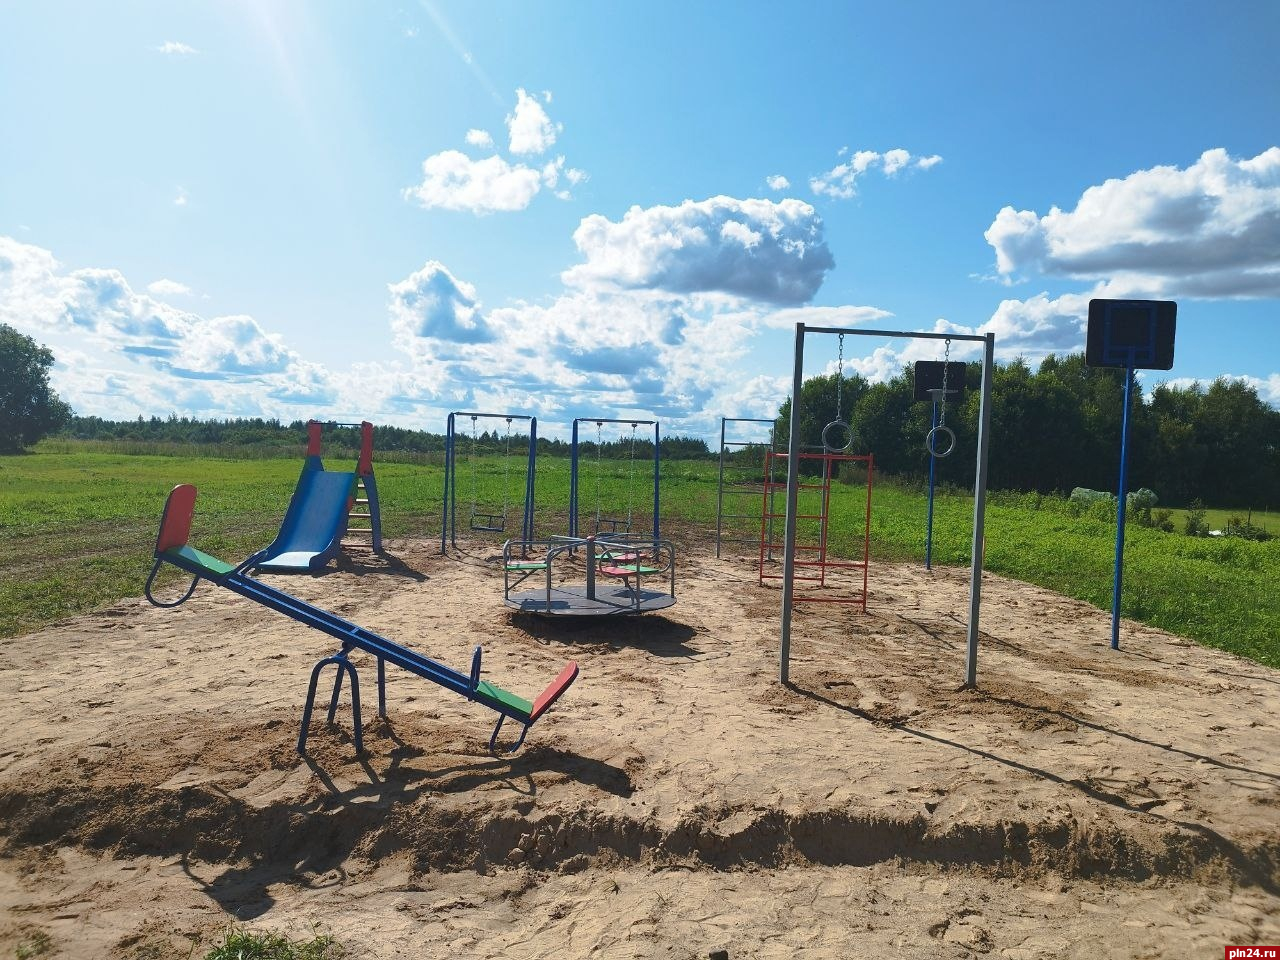 Шесть детских площадок установили в Пушкиногорском районе с начала года 